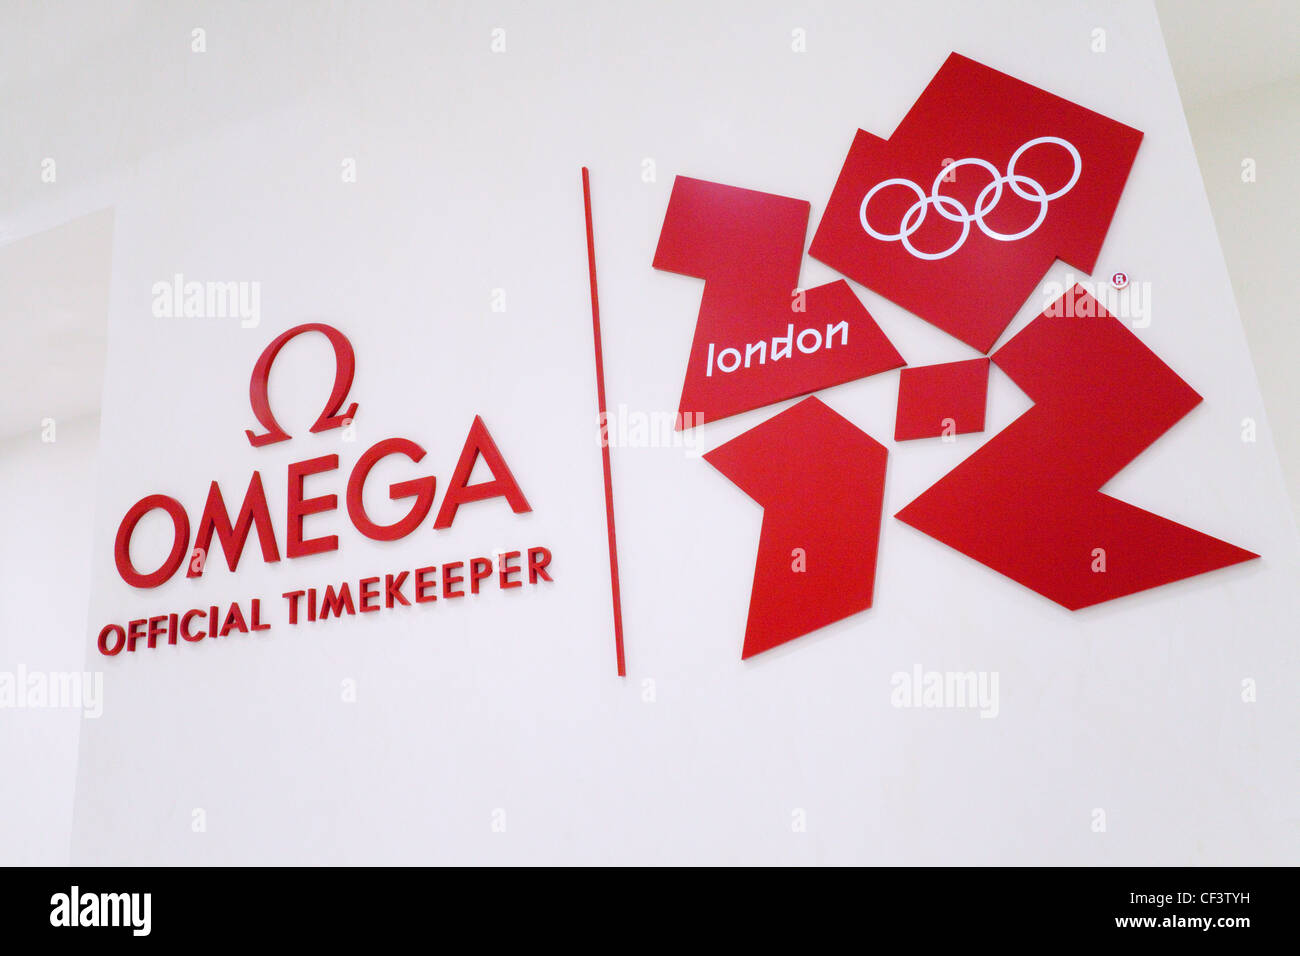 Omega orologi SA, cronometrista ufficiale dei Giochi Olimpici di Londra 2012 REGNO UNITO Foto Stock